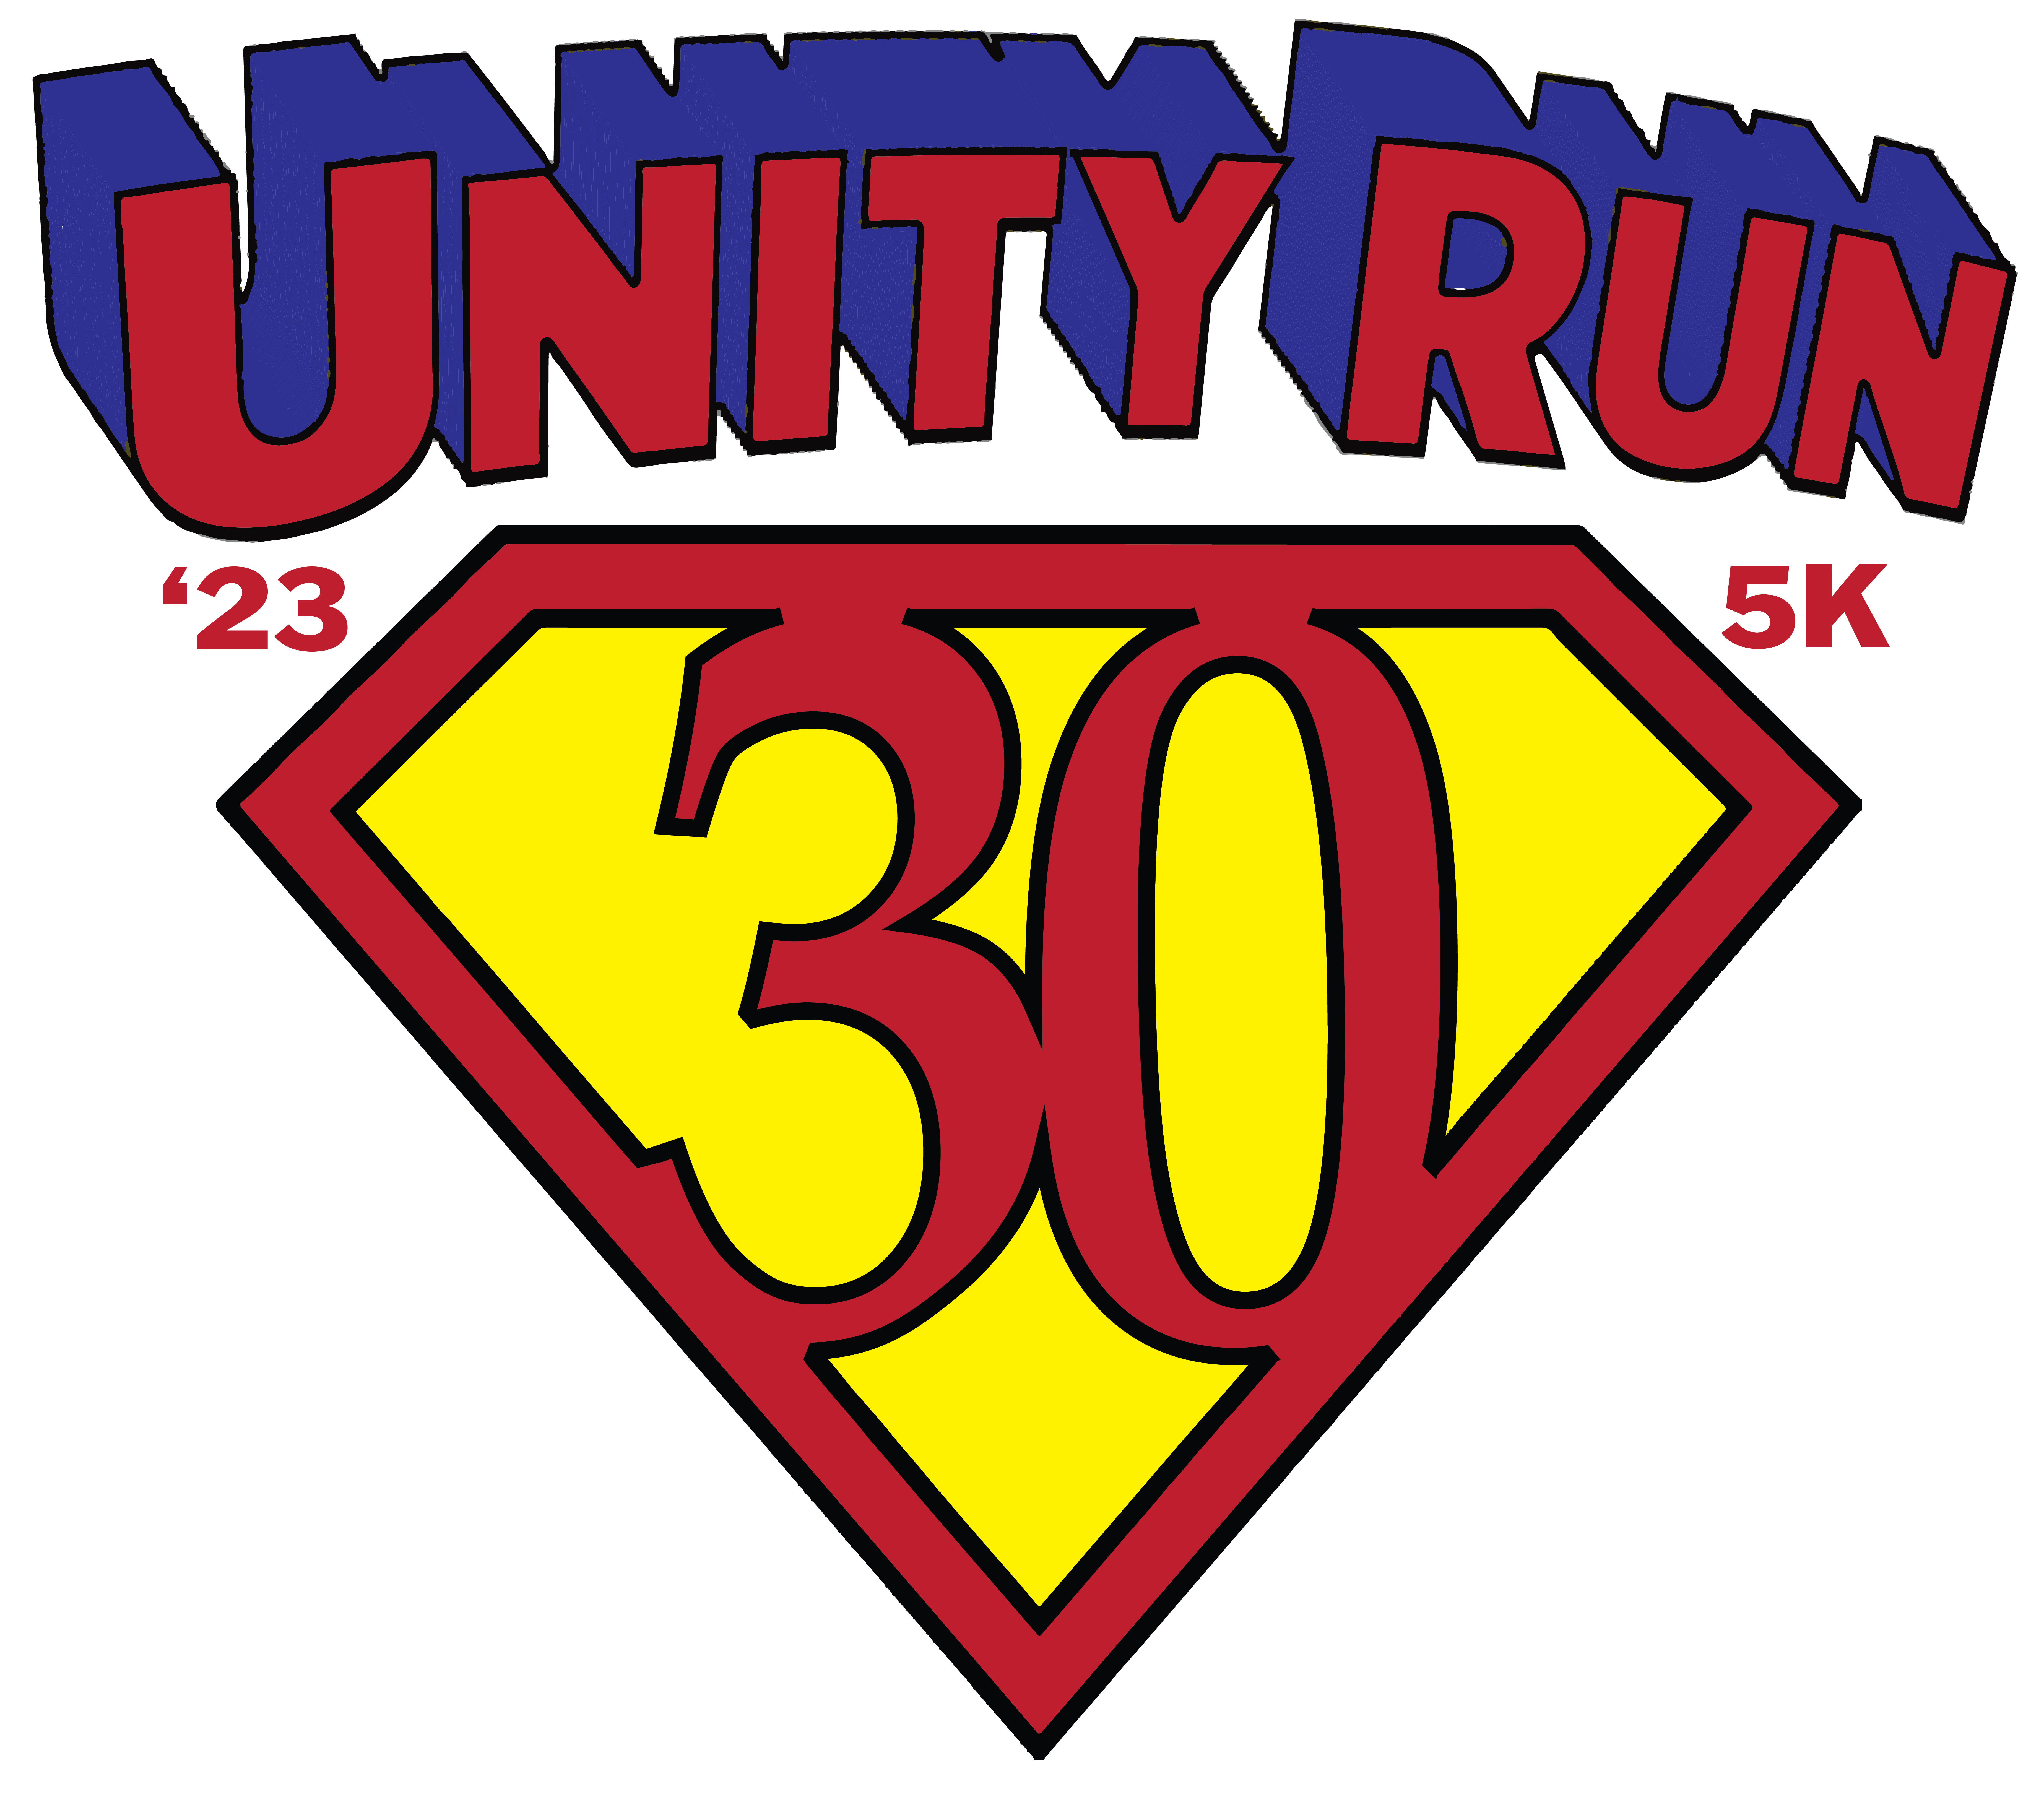 Unity Run 5K logo on RaceRaves